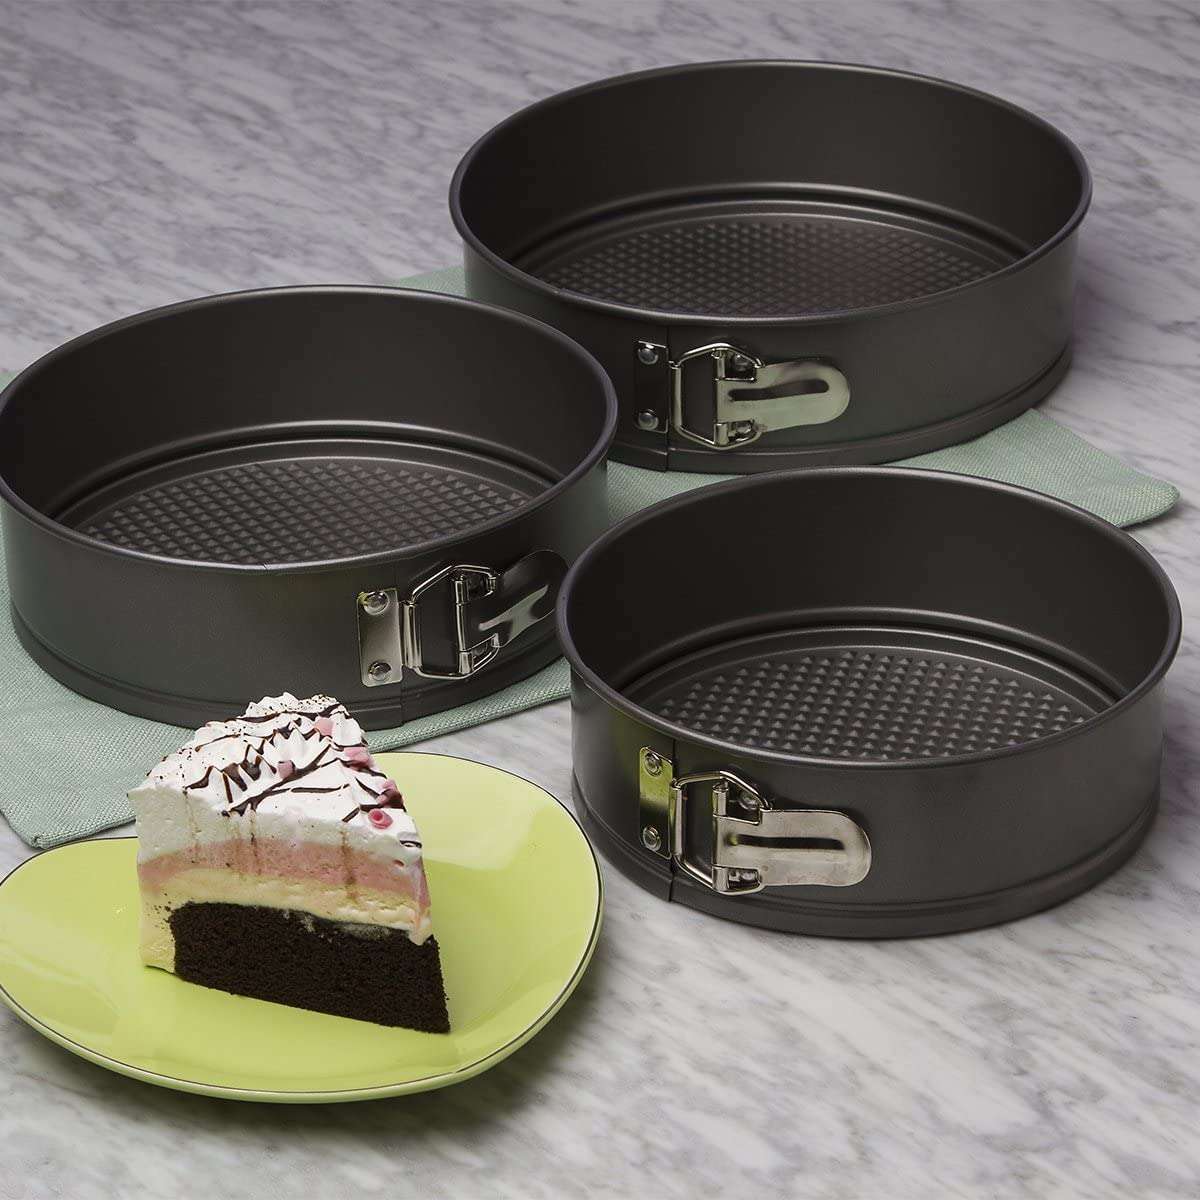 Cake Pan & Springform Pan Collection